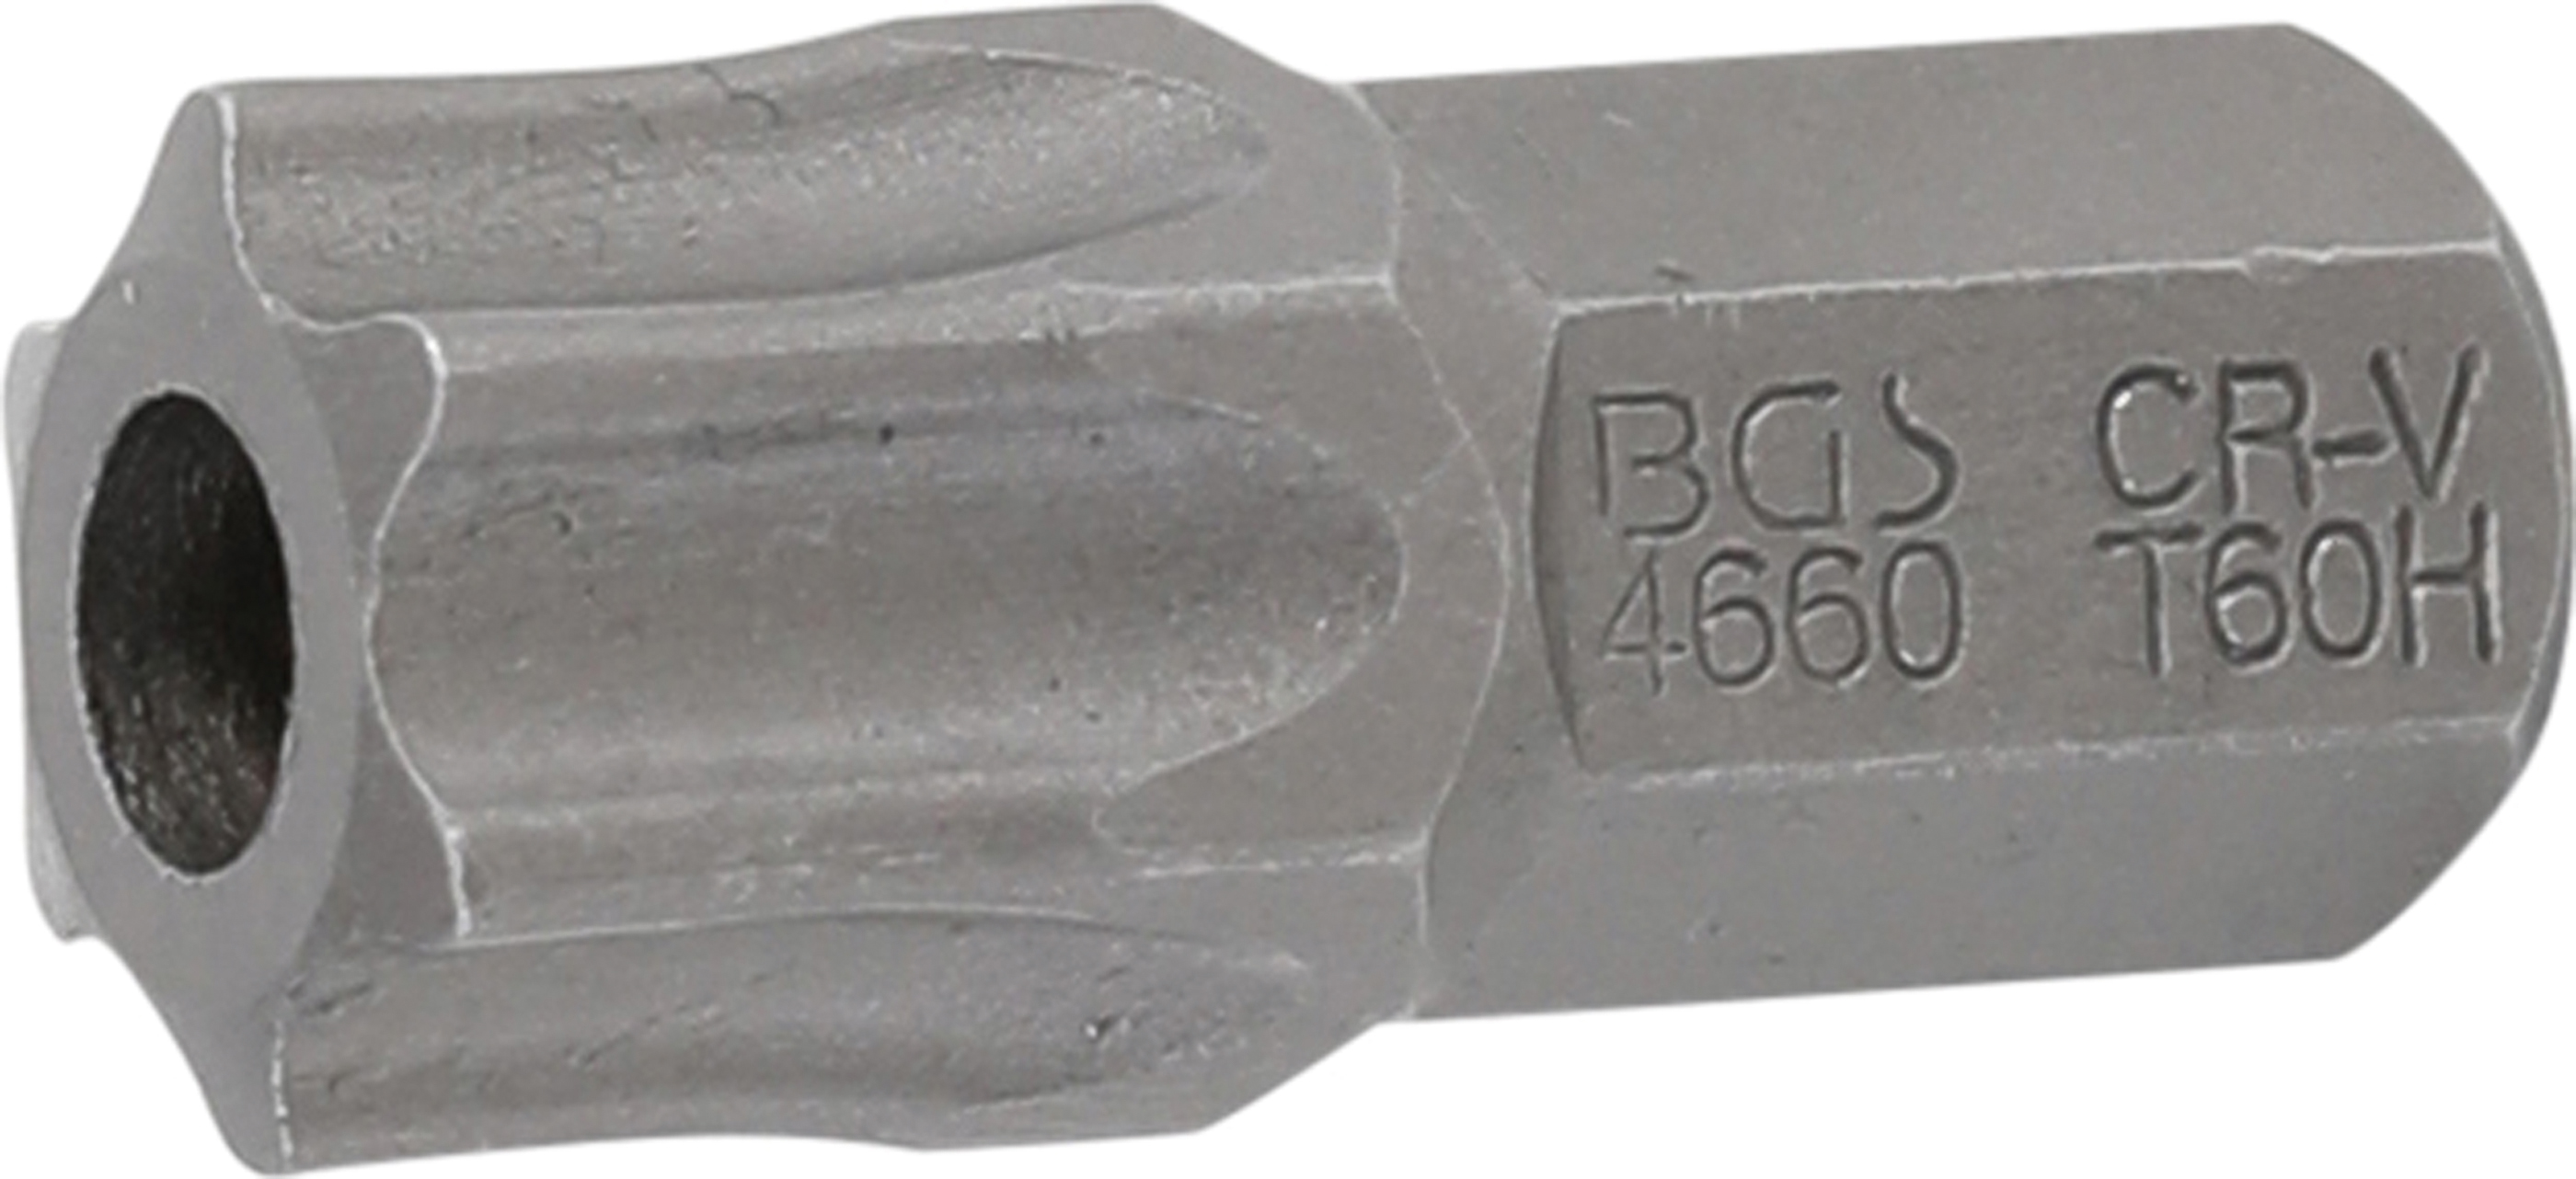 BGS 4660 Bit Torx T60 cu gaura de securizare, lungime 30mm, antrenare 10mm(3/8")